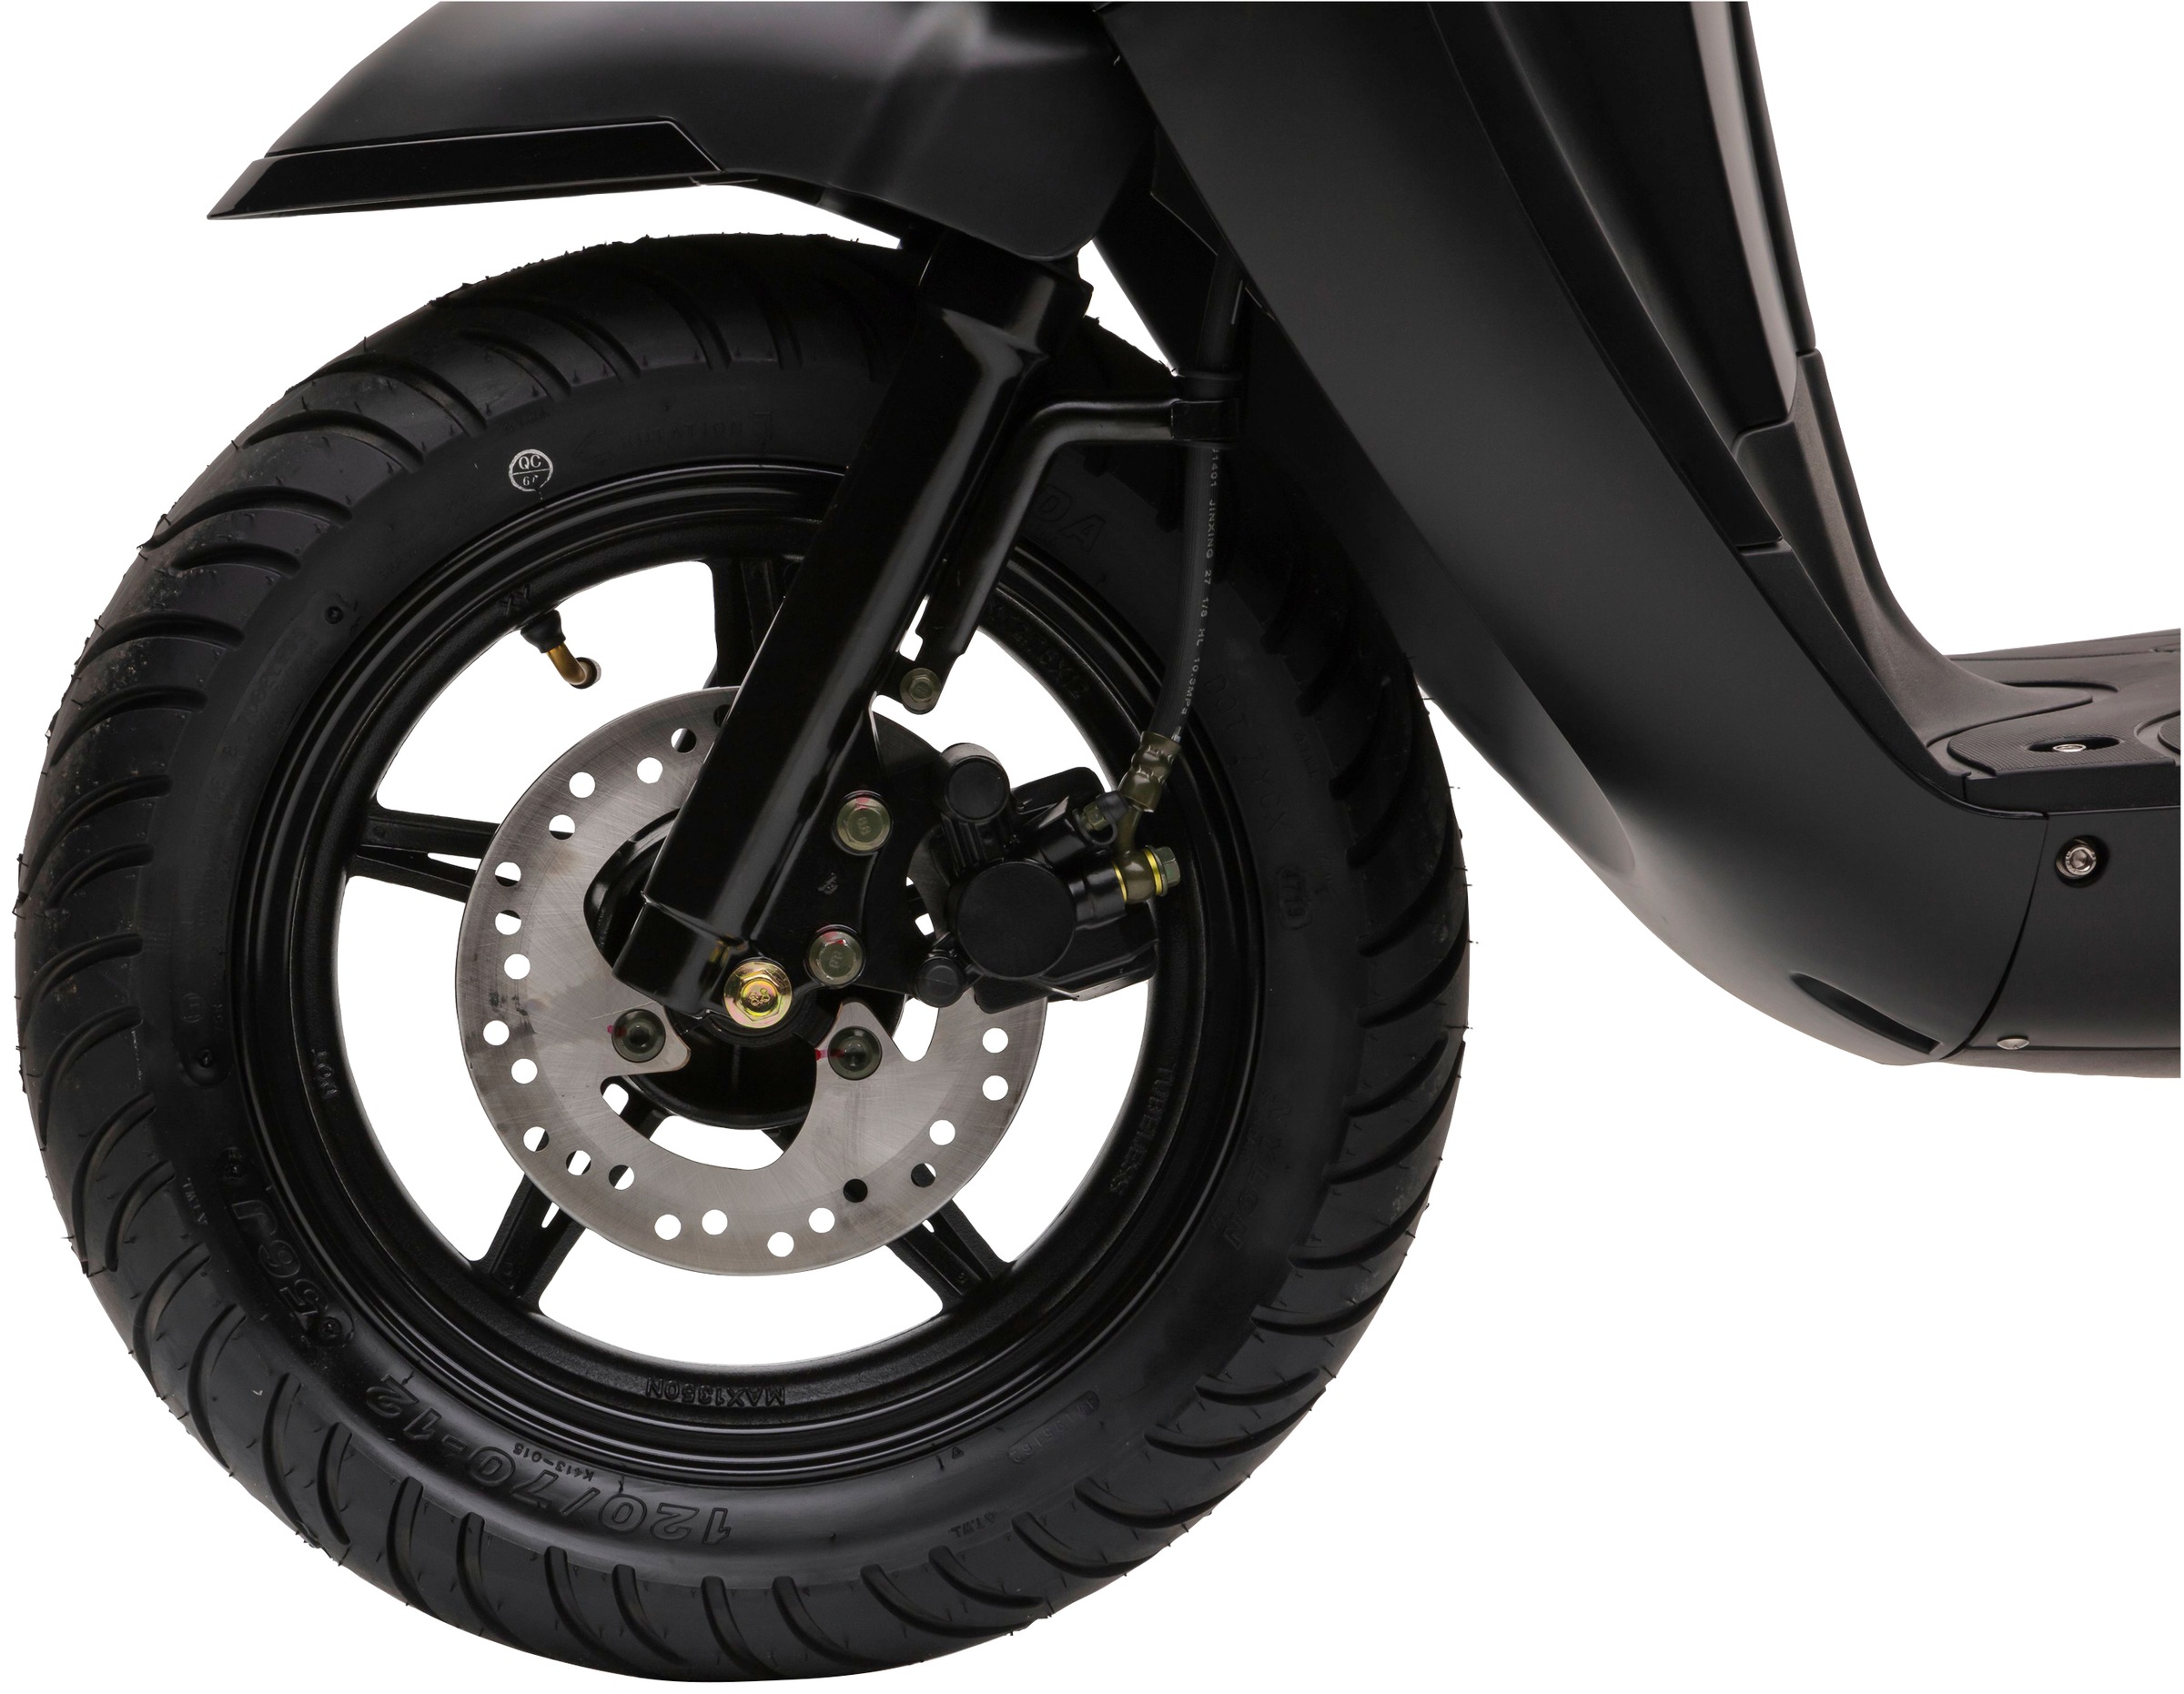 Nova Motors Motorroller »Estate«, 49 cm³, 45 km/h, Euro 5, 3,94 PS | BAUR